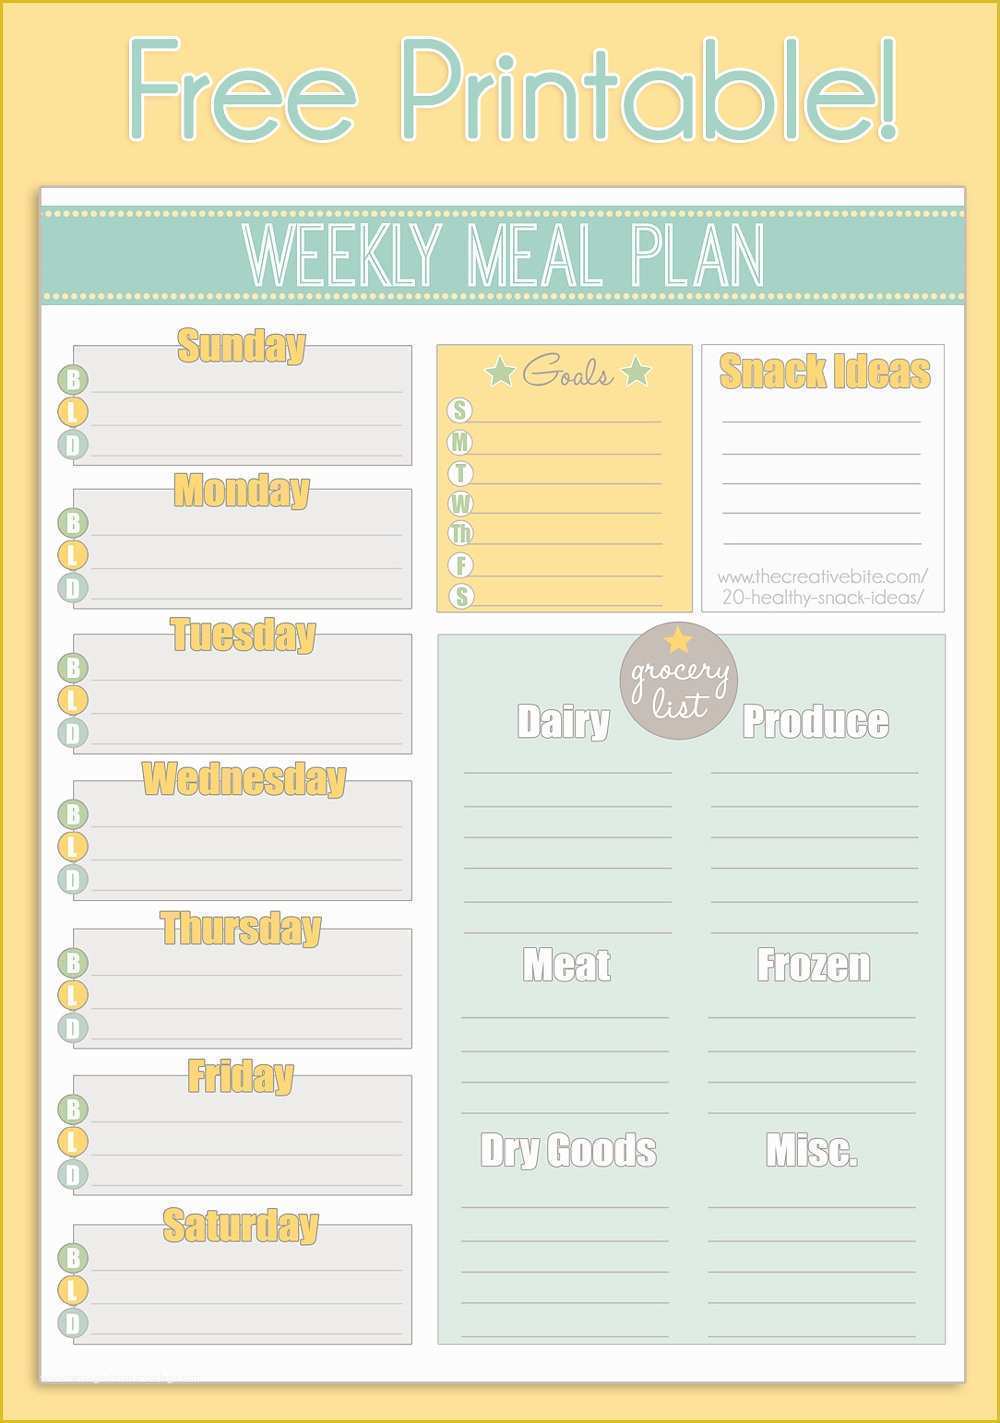 Free Printable Food Menu Templates Of Free Printable Weekly Meal Planner Calendar